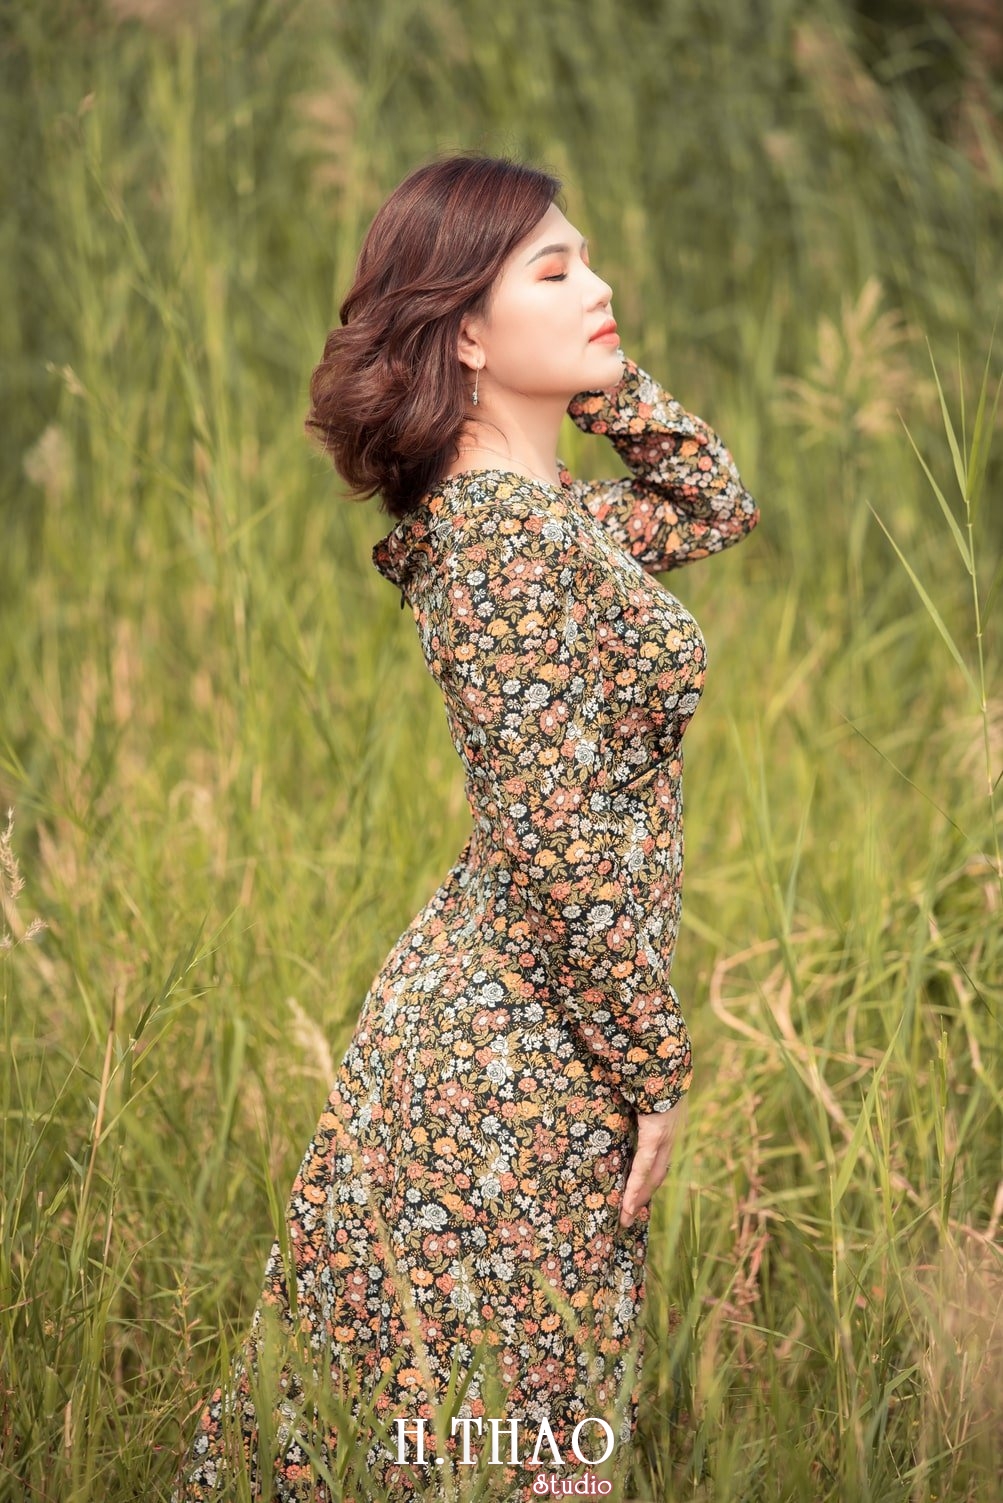 Canh Dong Co Lau 9 - Chụp ảnh với cánh đồng cỏ lau quận 9 tuyệt đẹp - HThao Studio